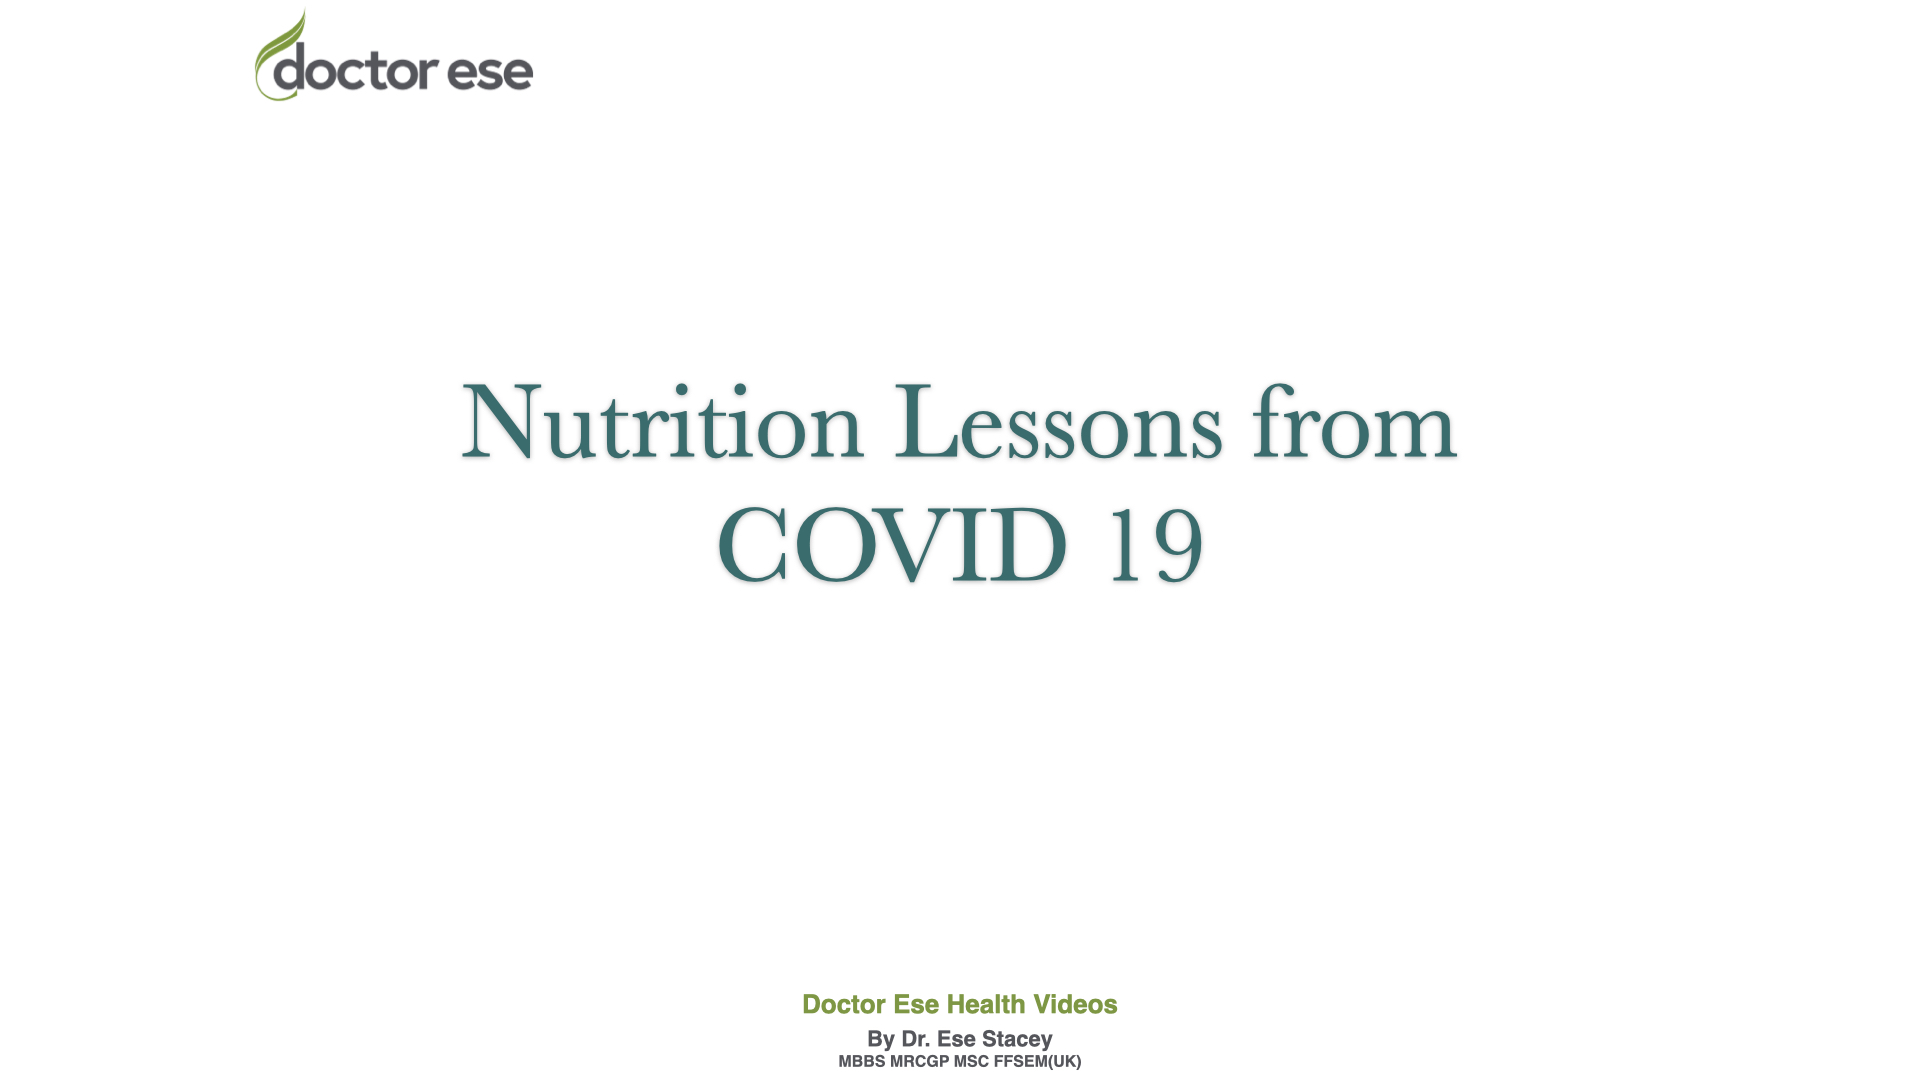 Nutritional lessons: Viruses